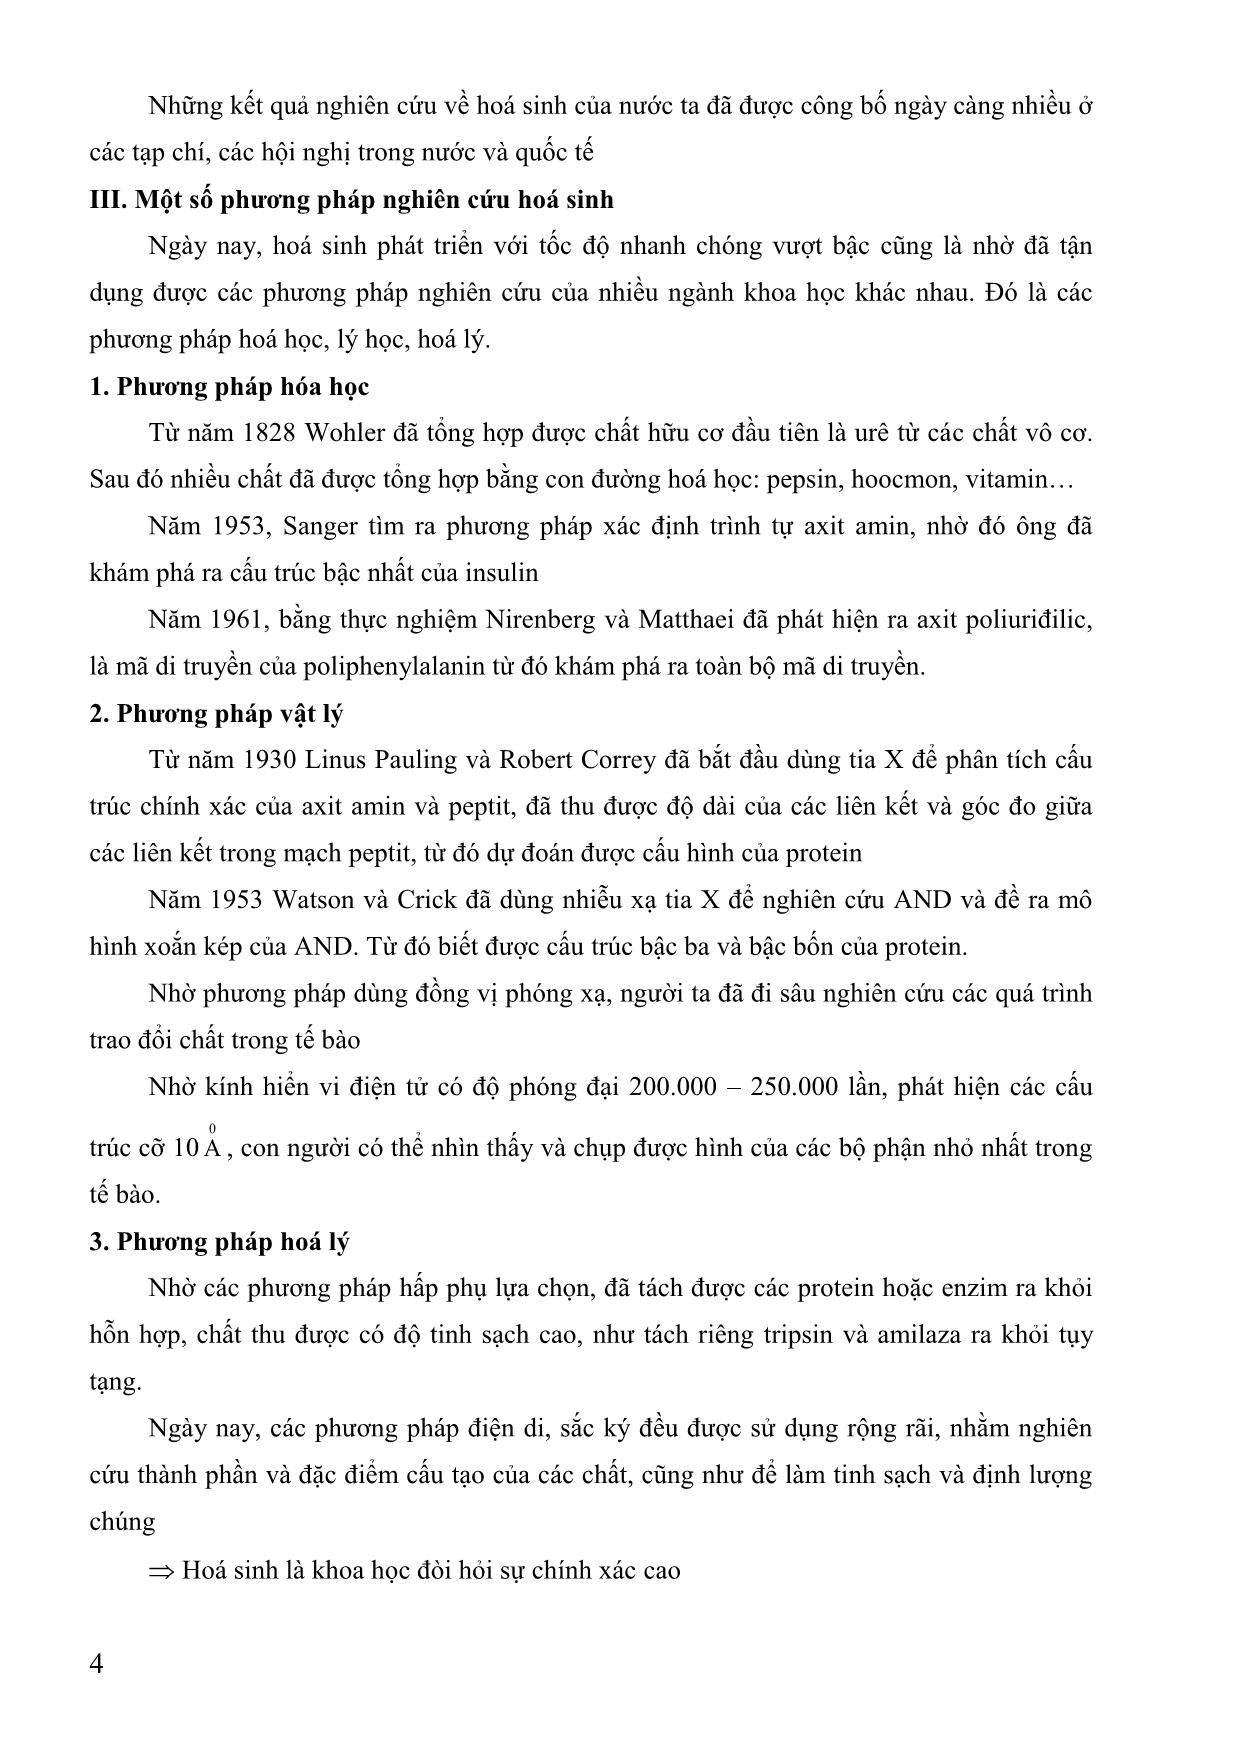 Giáo trình Hóa sinh (Phần 1) trang 4